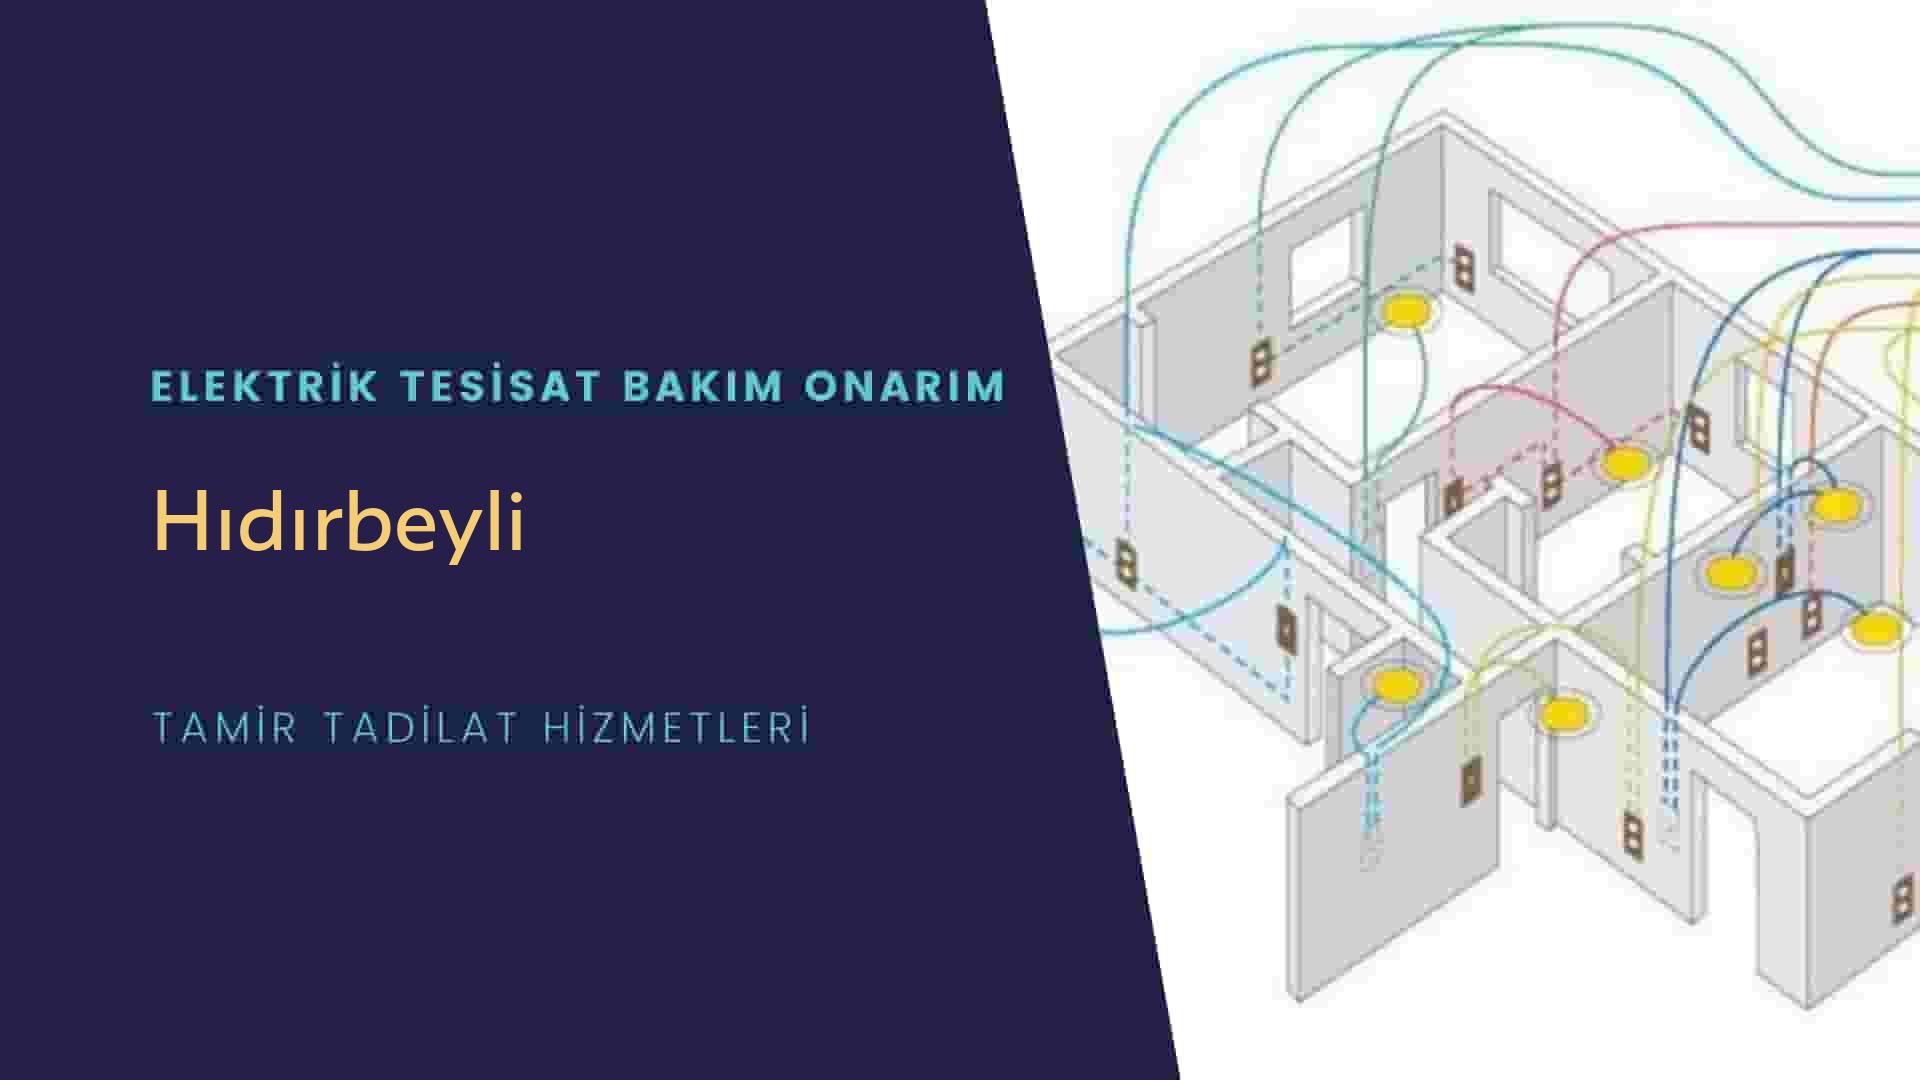 Hıdırbeyli'de elektrik tesisatı ustalarımı arıyorsunuz doğru adrestenizi Hıdırbeyli elektrik tesisatı ustalarımız 7/24 sizlere hizmet vermekten mutluluk duyar.